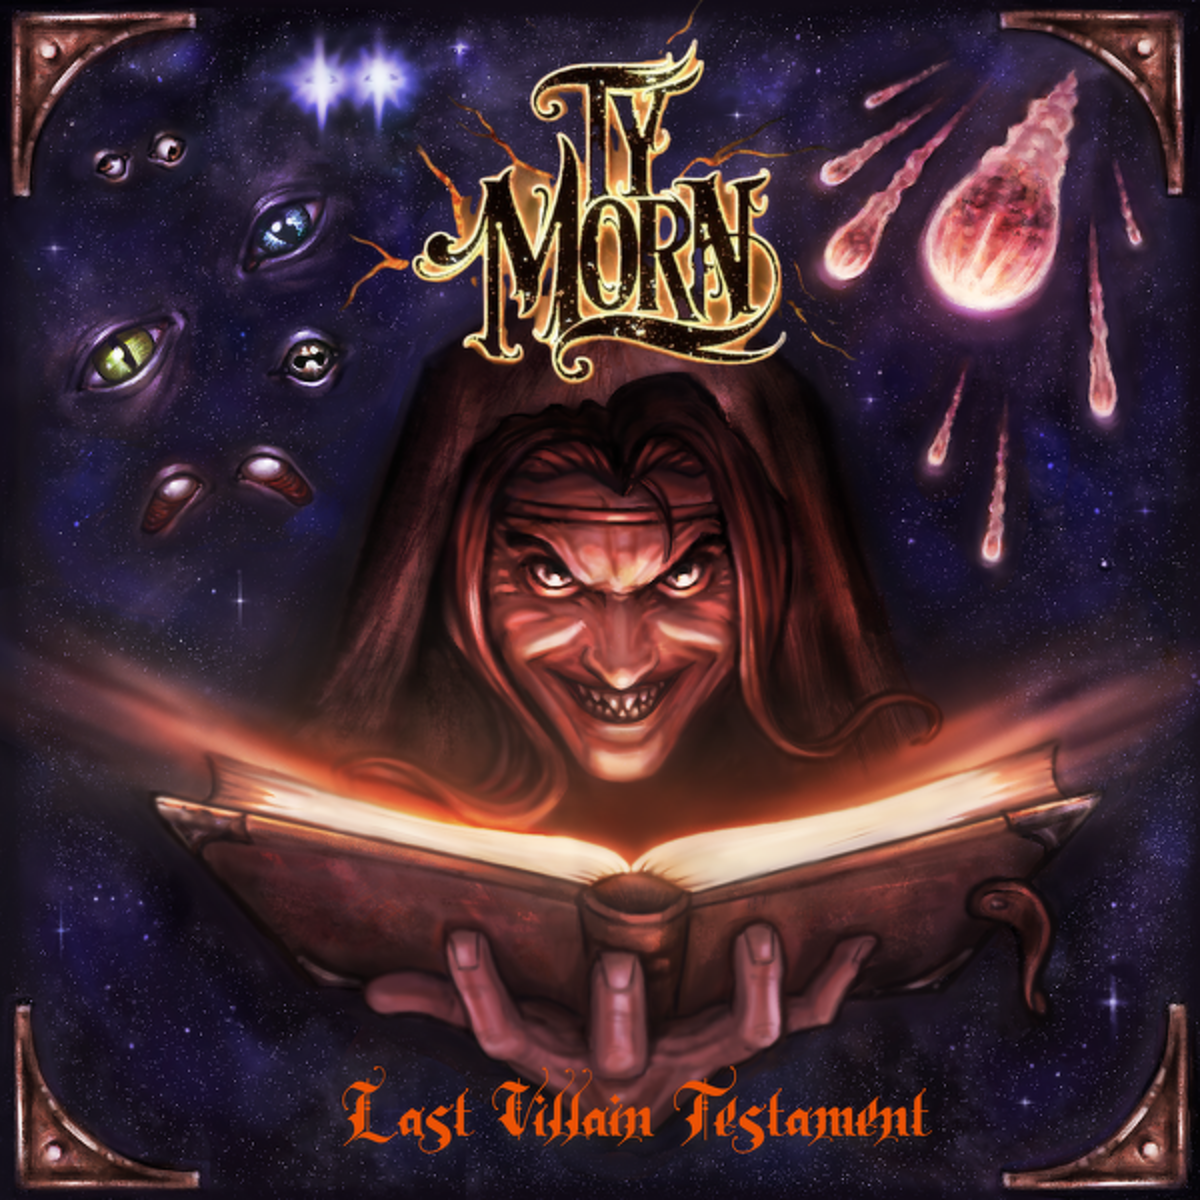 "Last Villain Testament" album cover